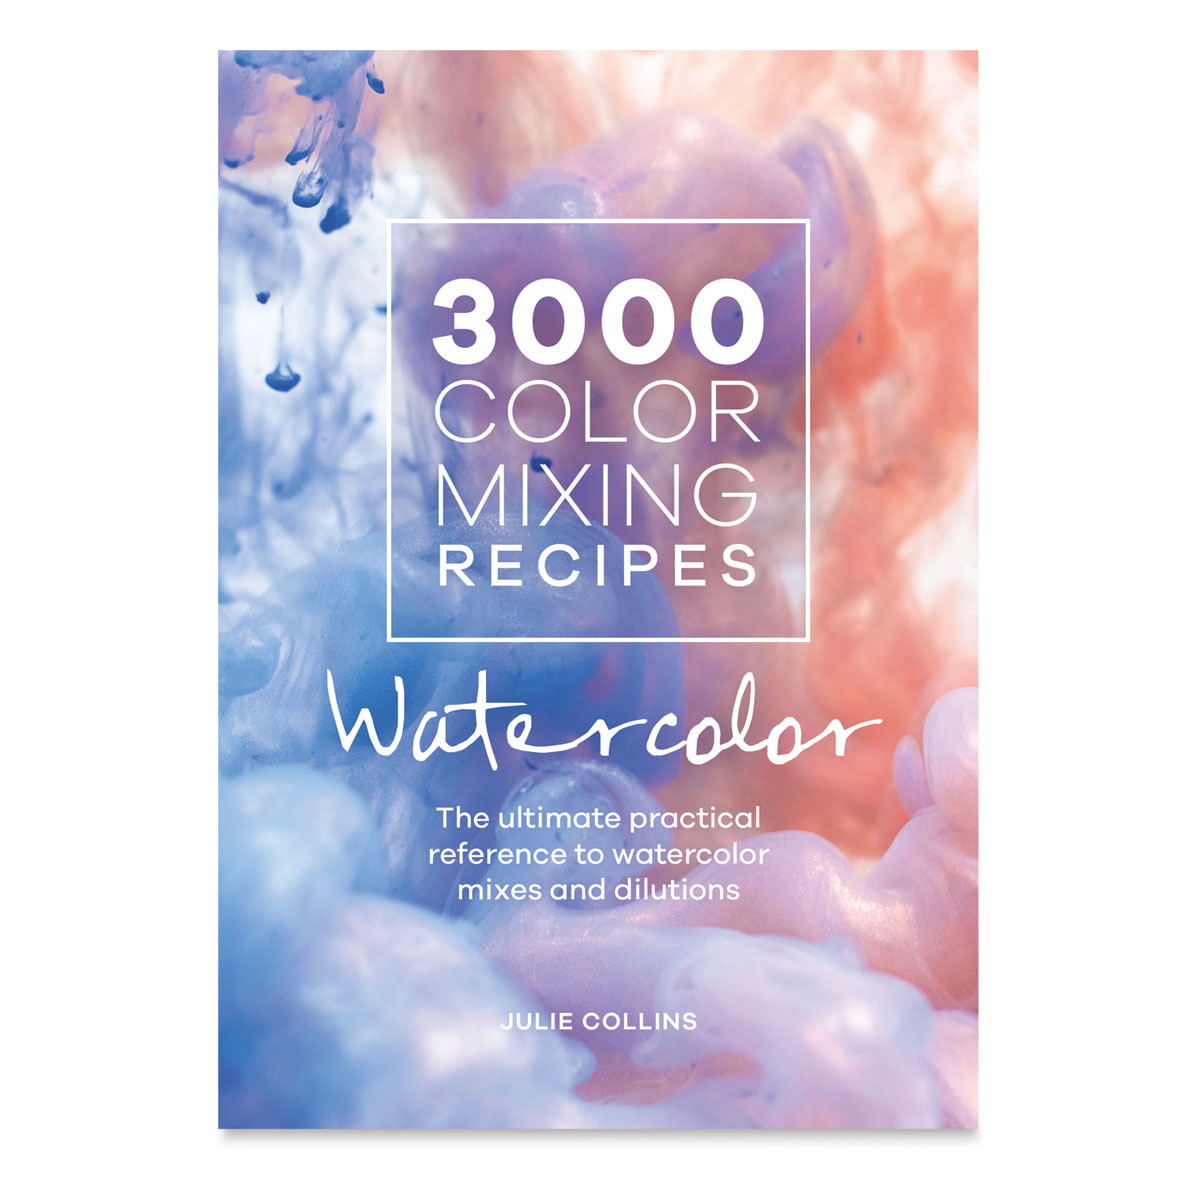 3000 Color Mixing Recipes: Watercolor